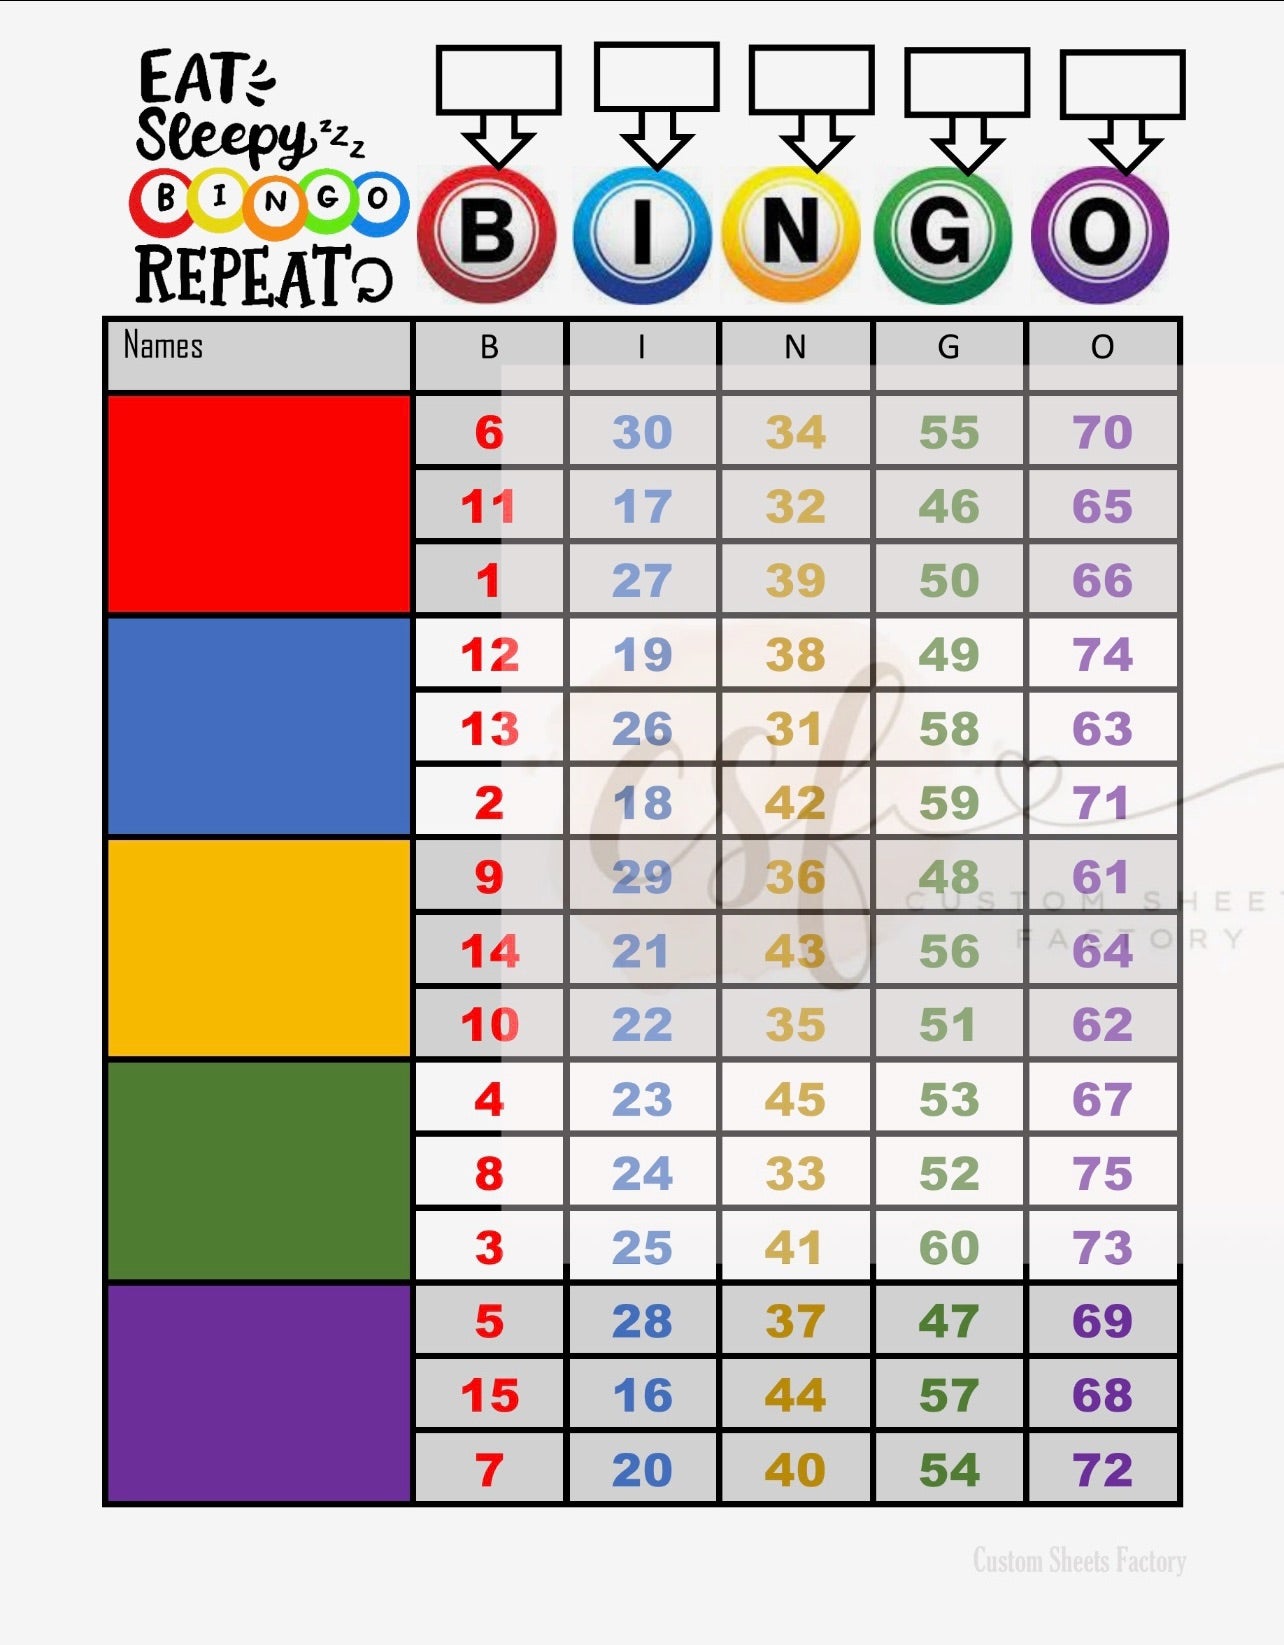 Eat Sleep Bingo - 5 Block - 75 Ball